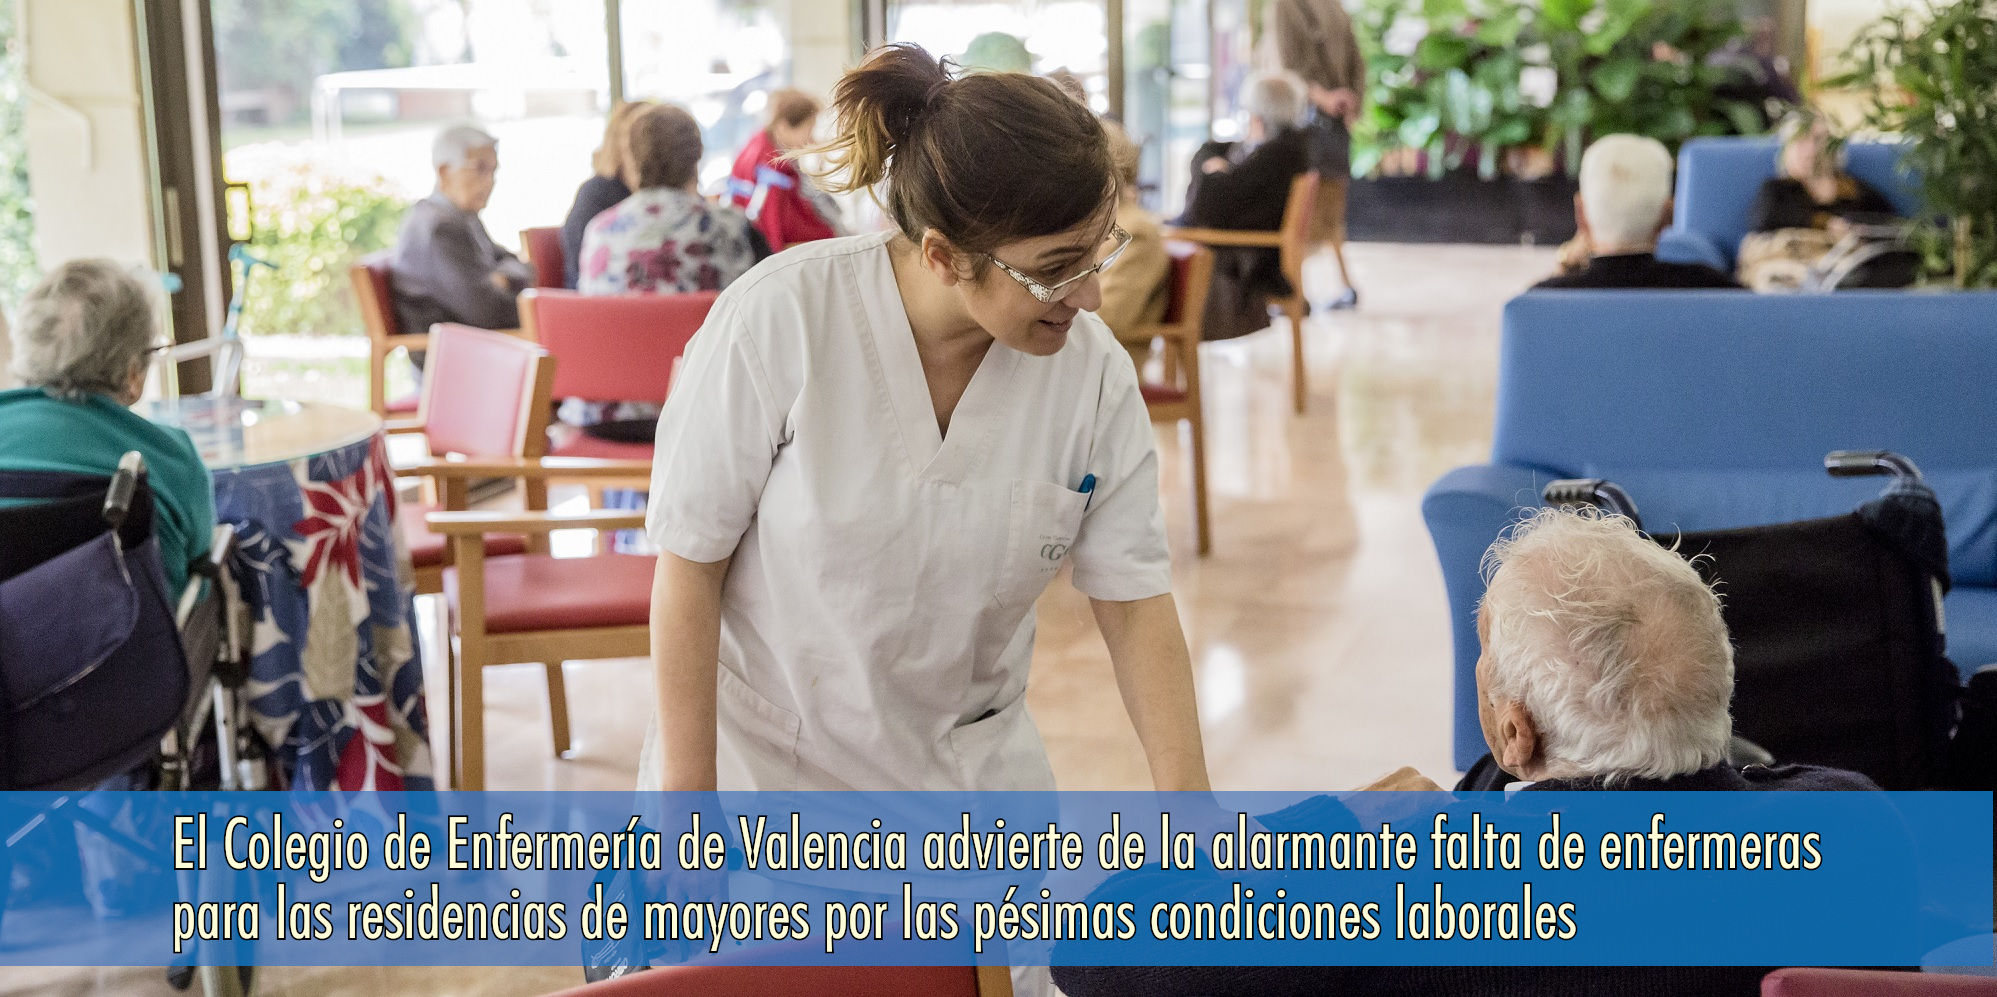 El Colegio de Enfermería de Valencia advierte de la alarmante falta de enfermeras para las residencias de mayores por las pésimas condiciones laborales